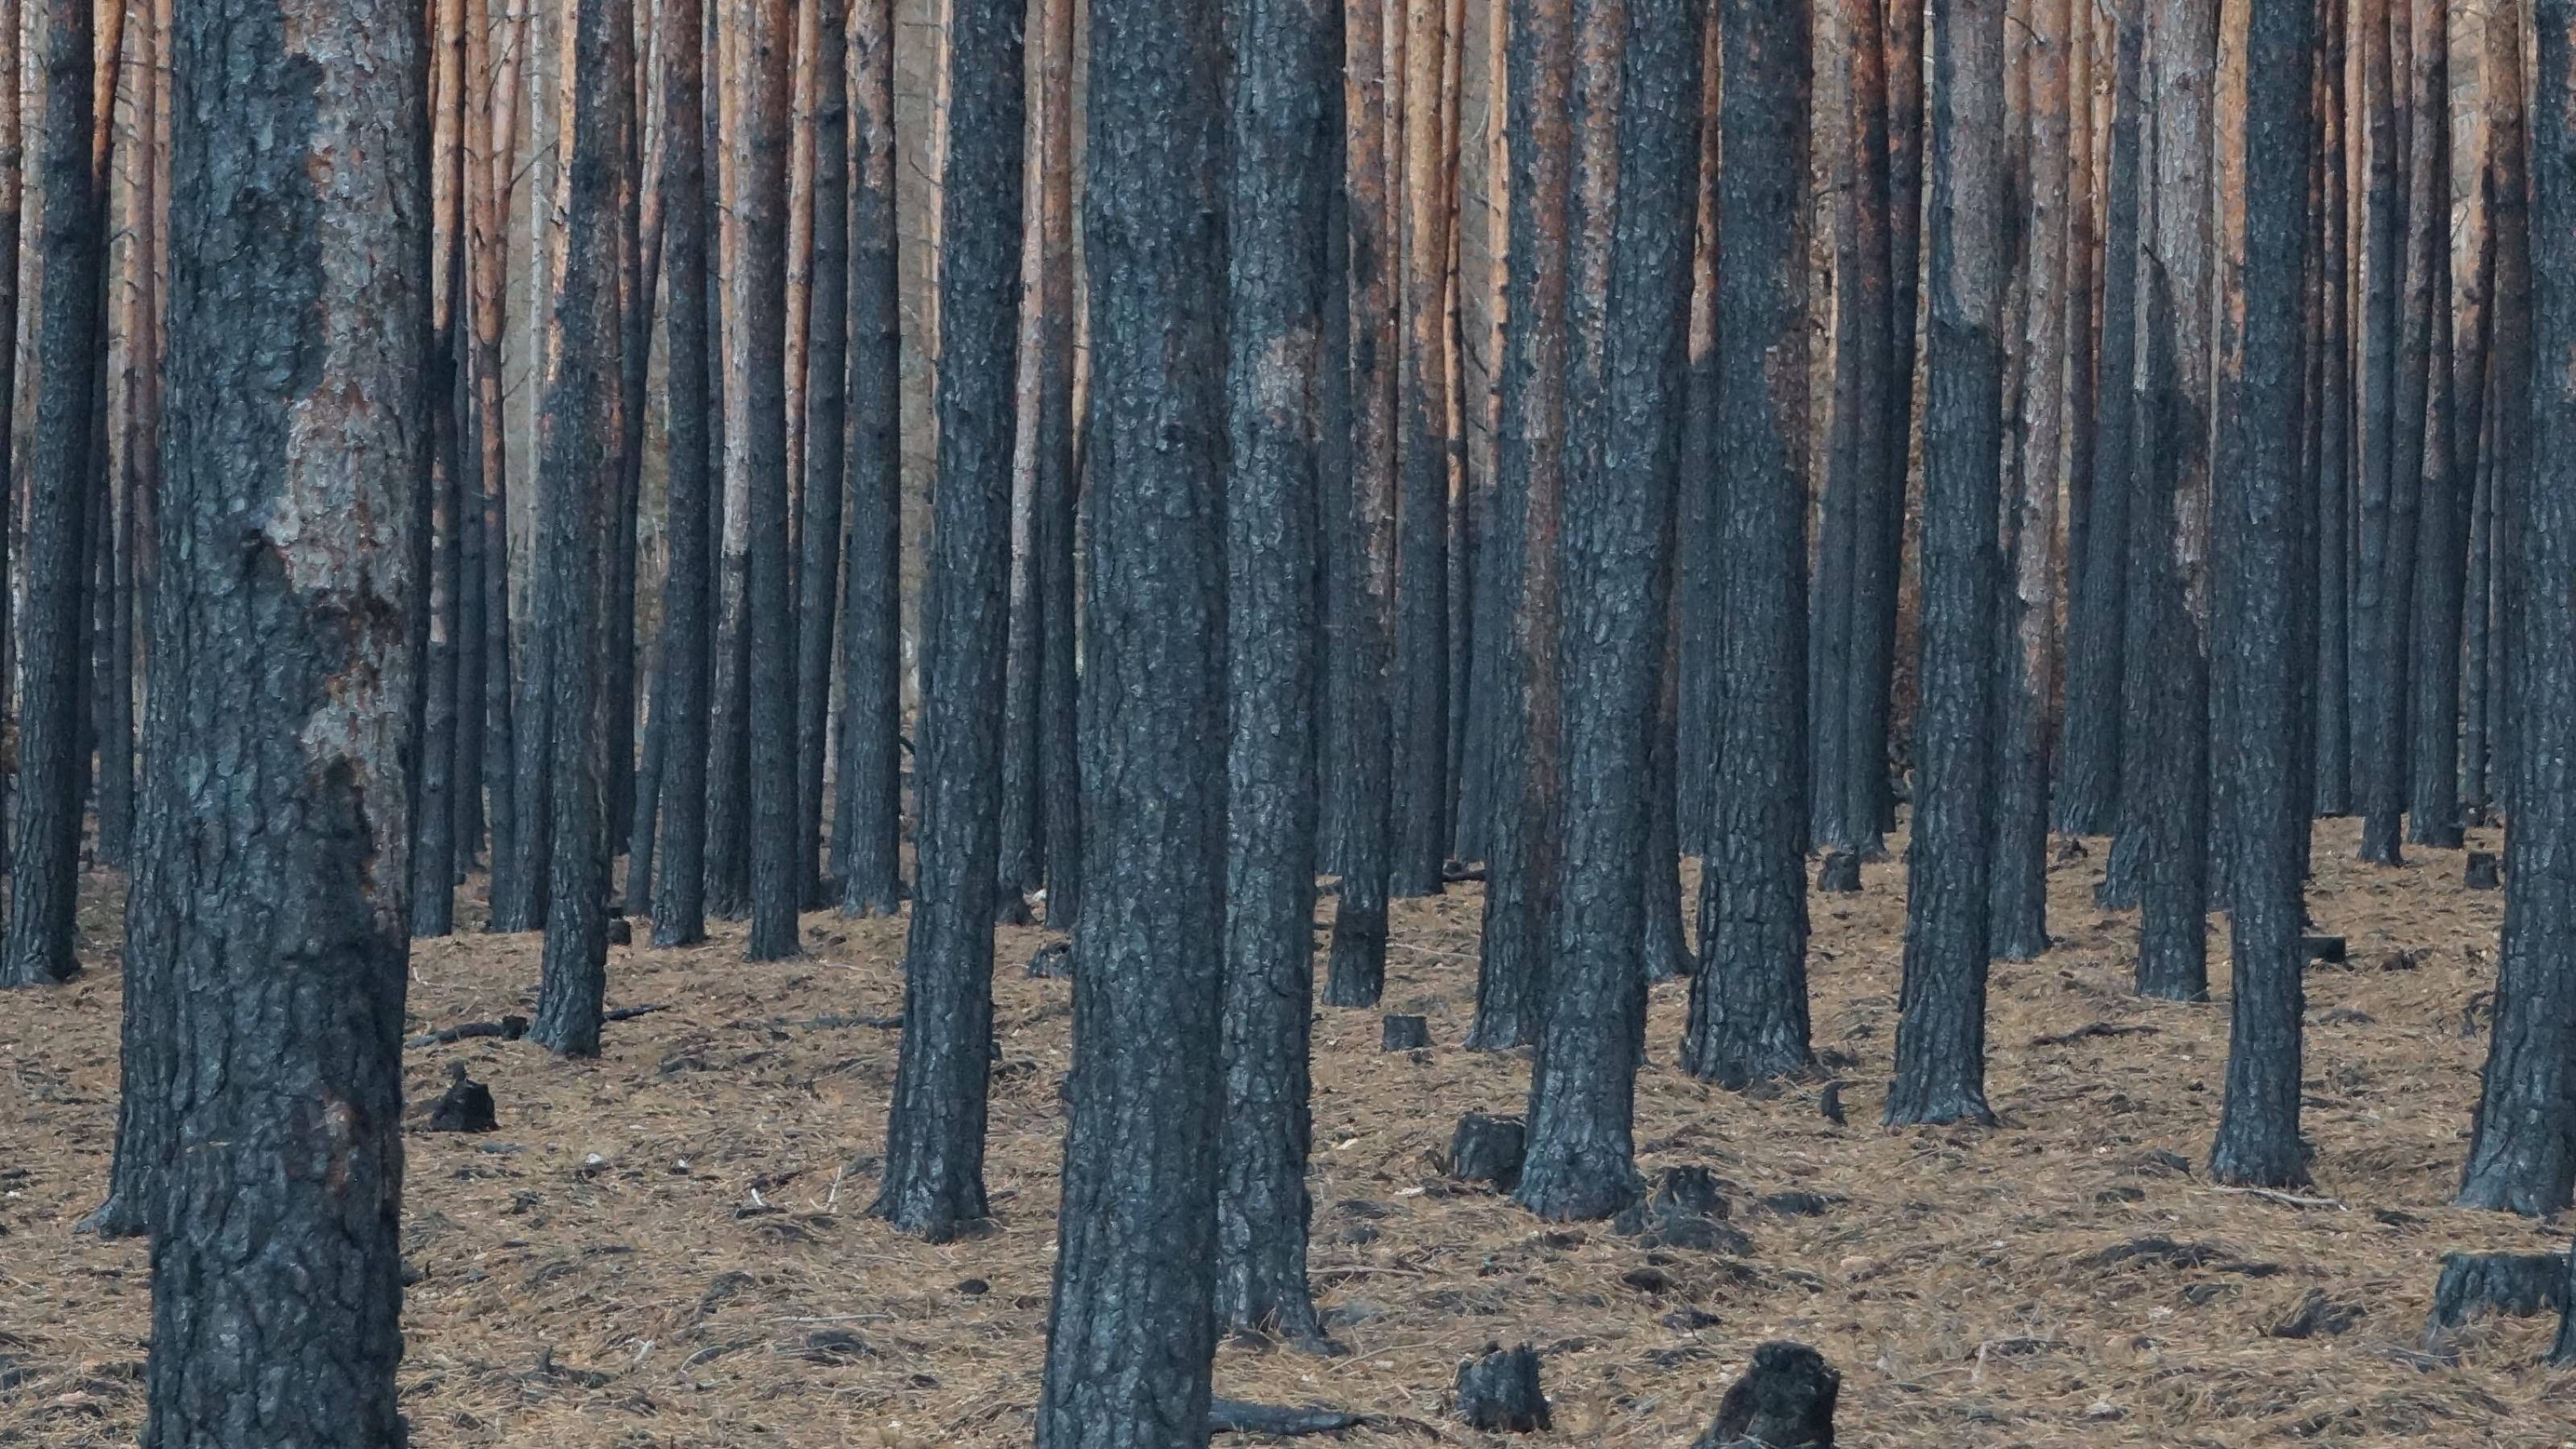 Verkohlte Baumstämme nach dem Brand in einem Wald in Treuenbrietzen (Brandenburg)